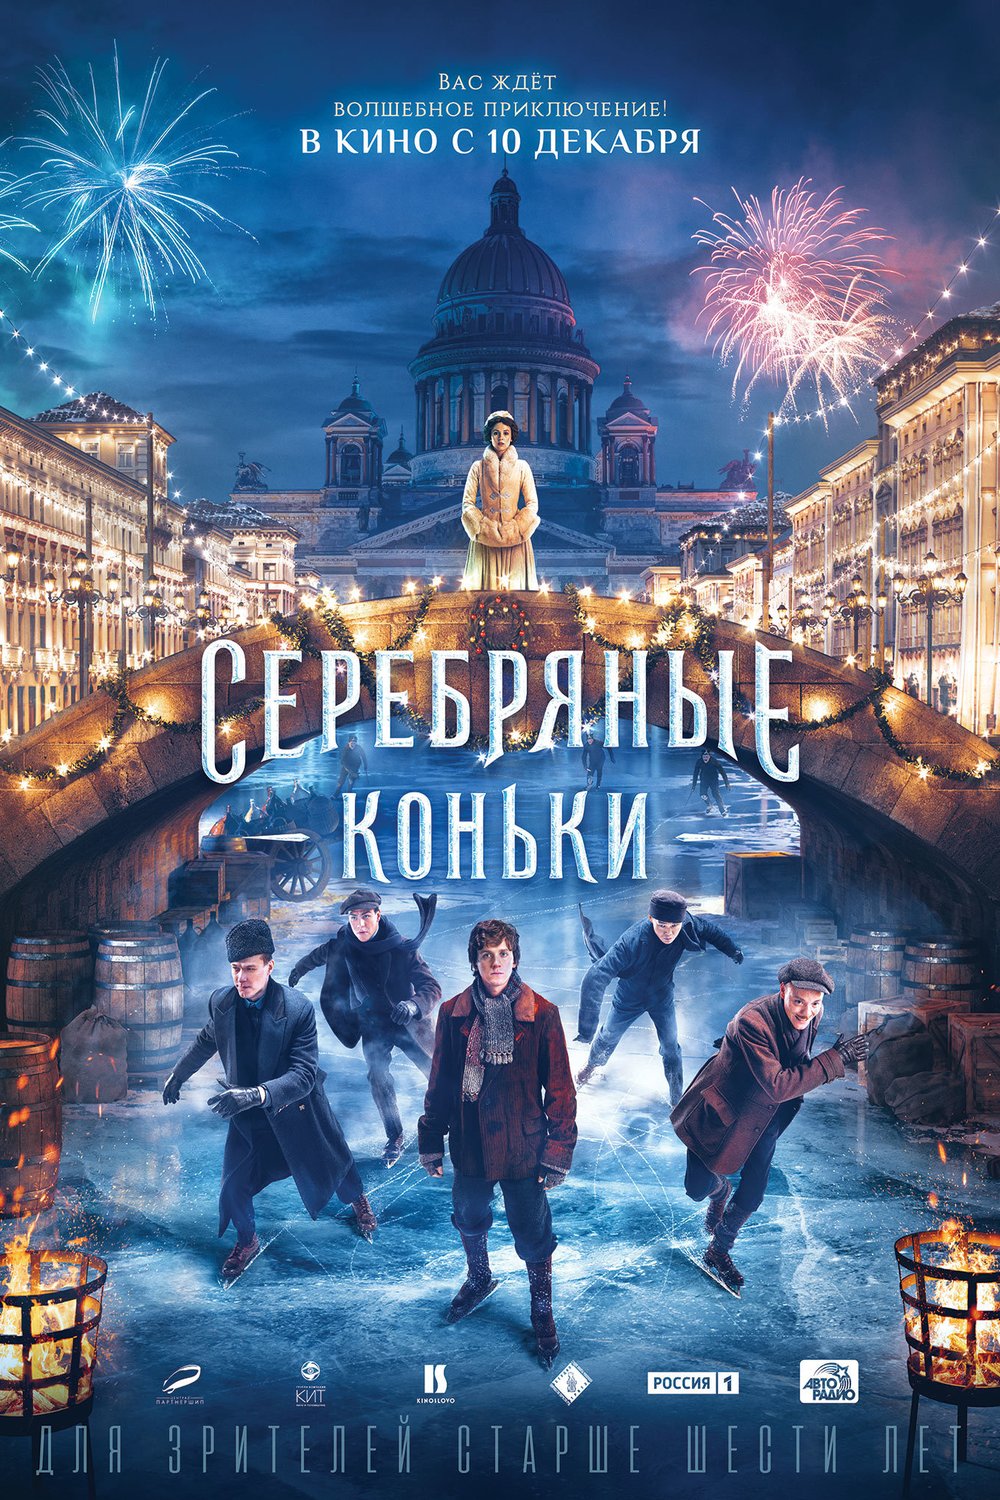 L'affiche originale du film Serebryanye konki en russe